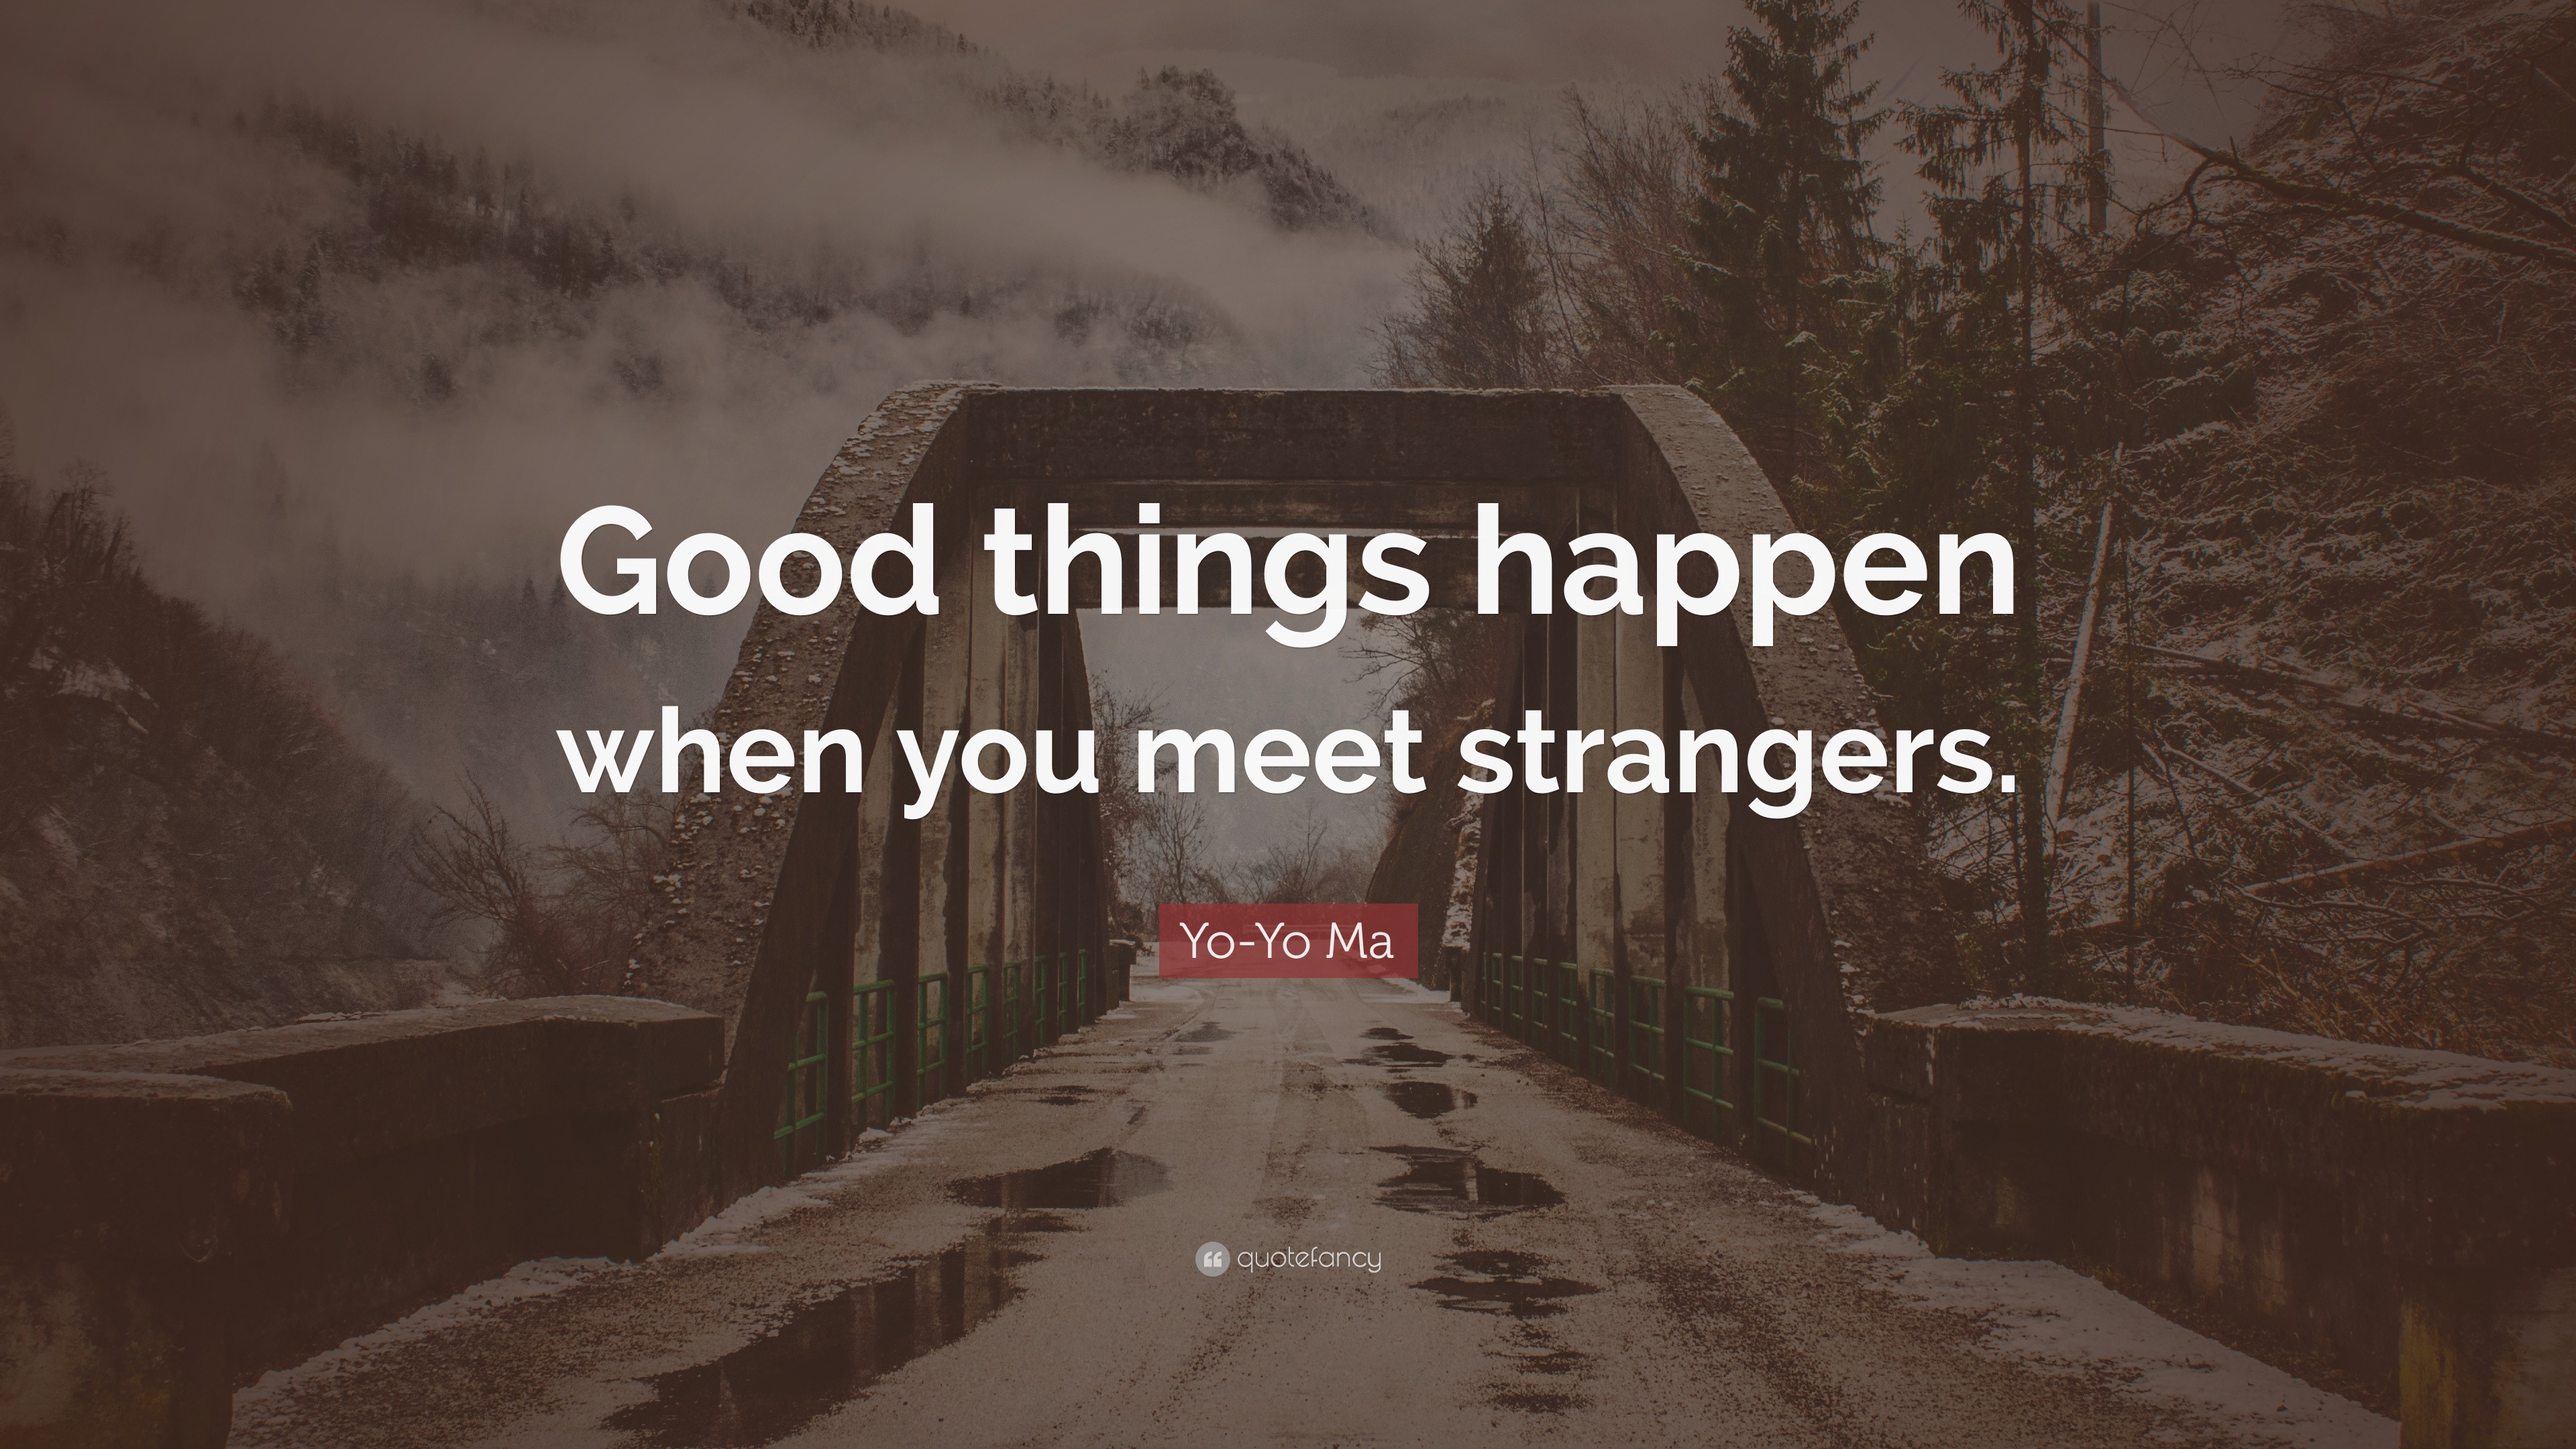 Good Strangers